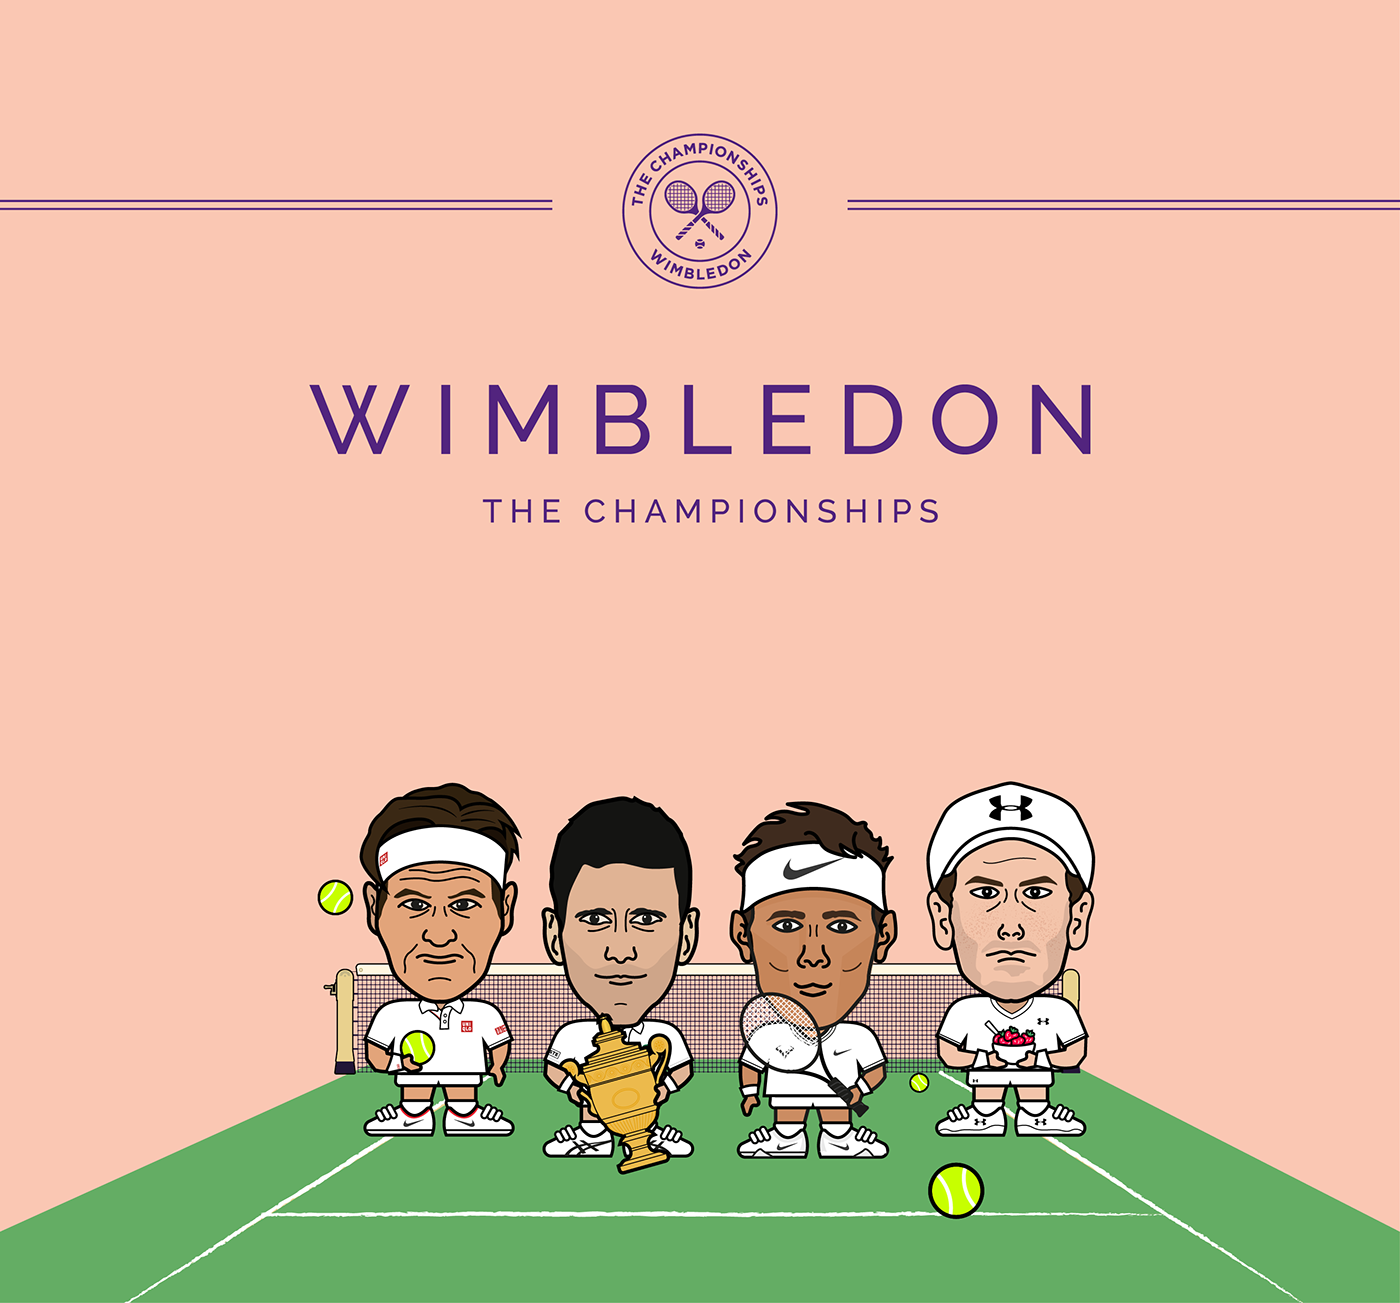 wimbledon championships tennis Centre Court Nadal djokovic murray federer tennis ball Miniature